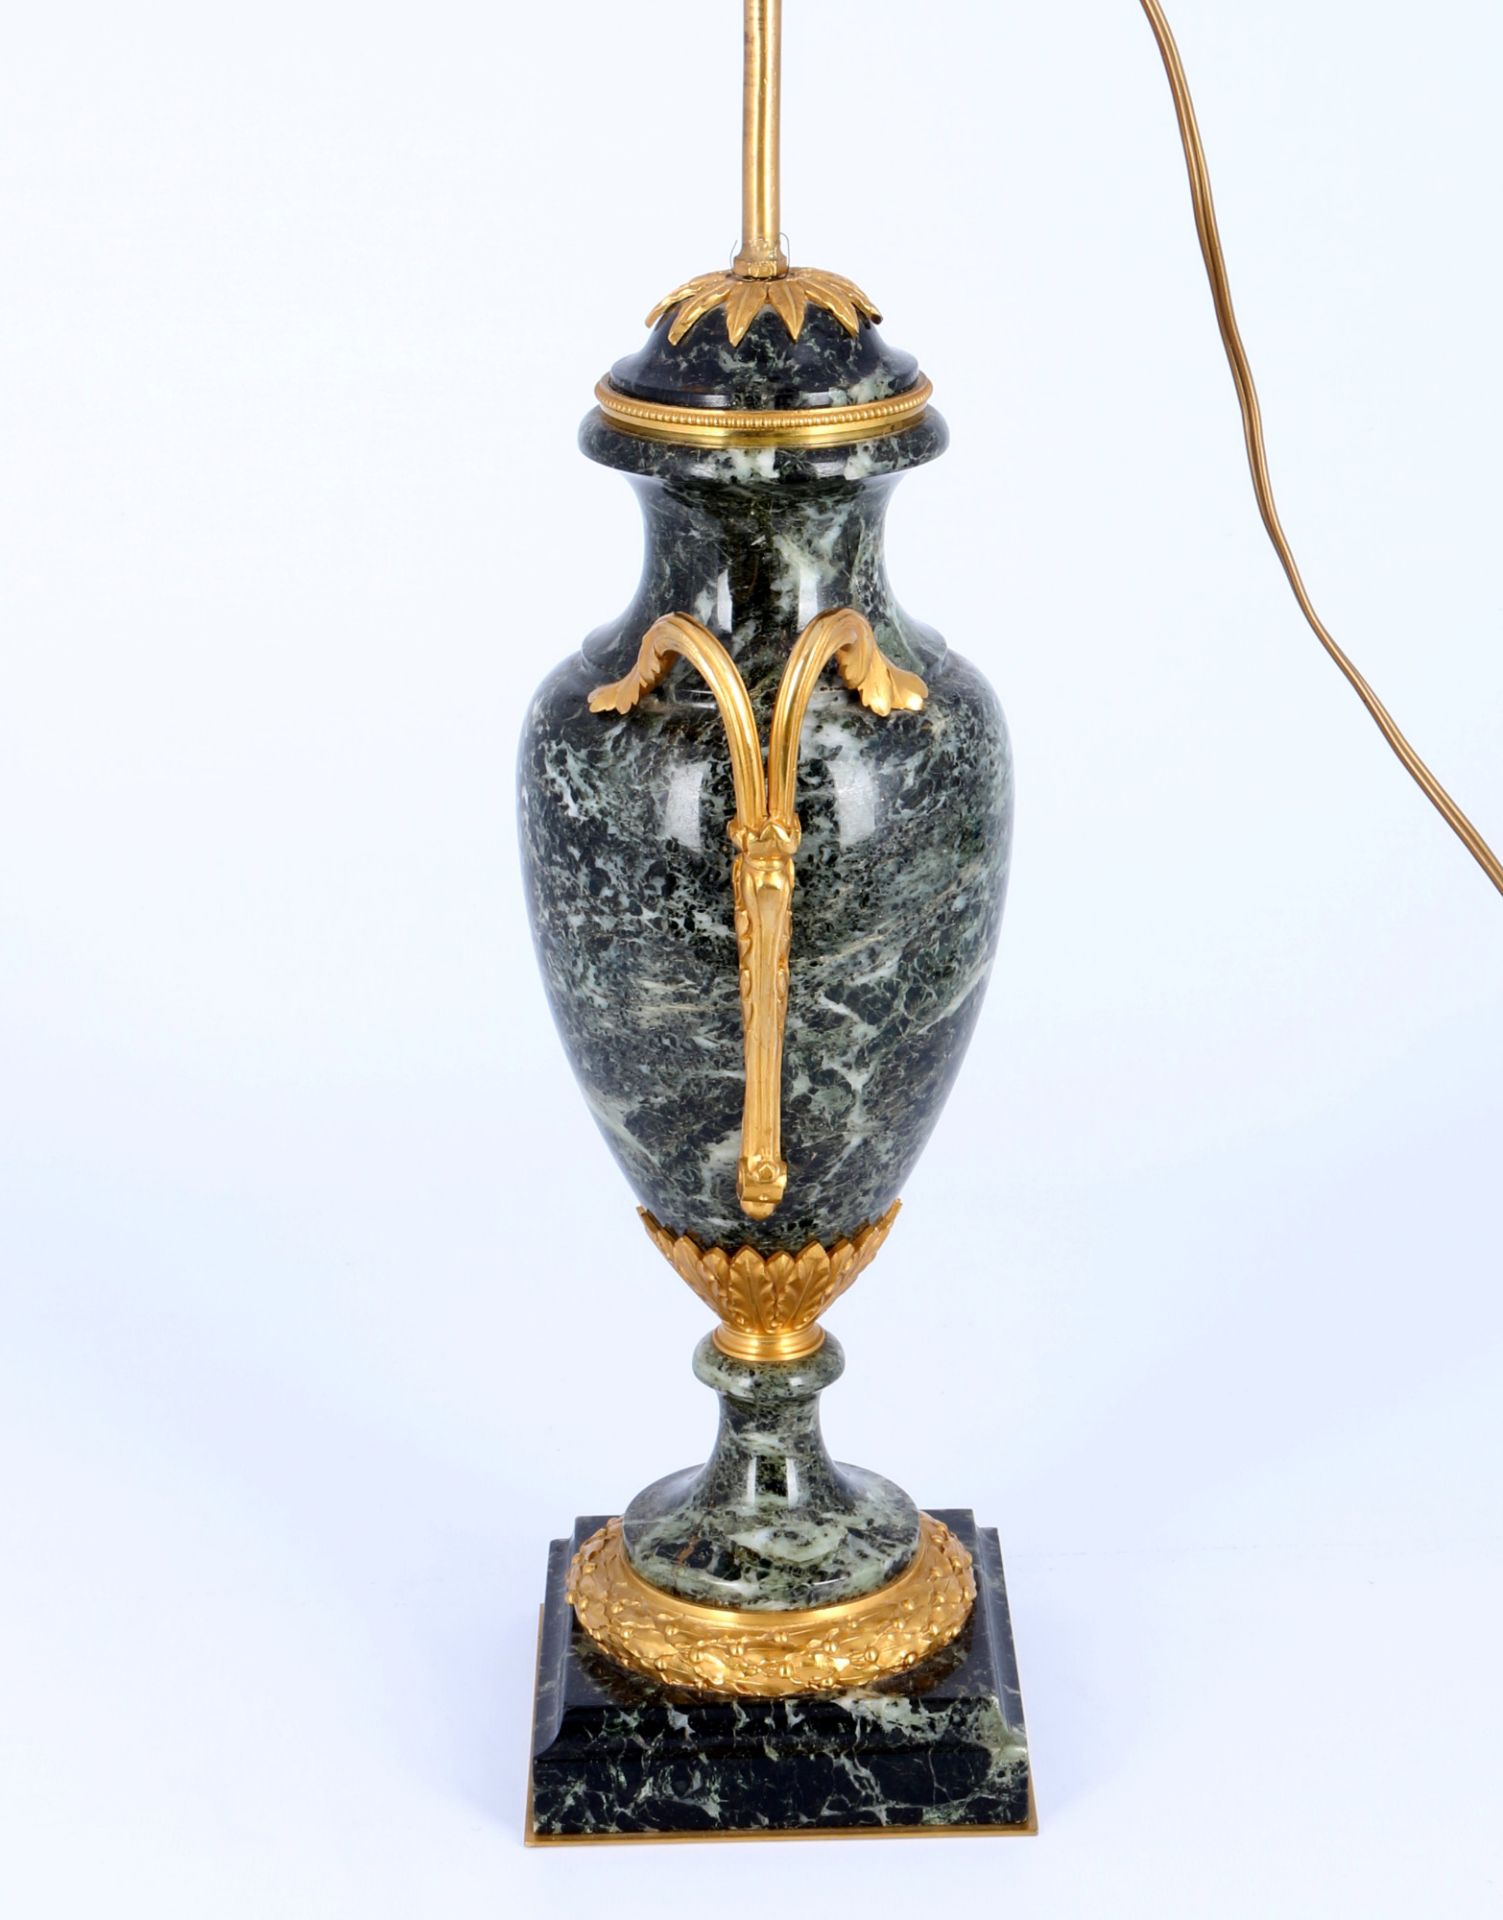 Vasenlampe in Louis XV Stil , - Bild 3 aus 4